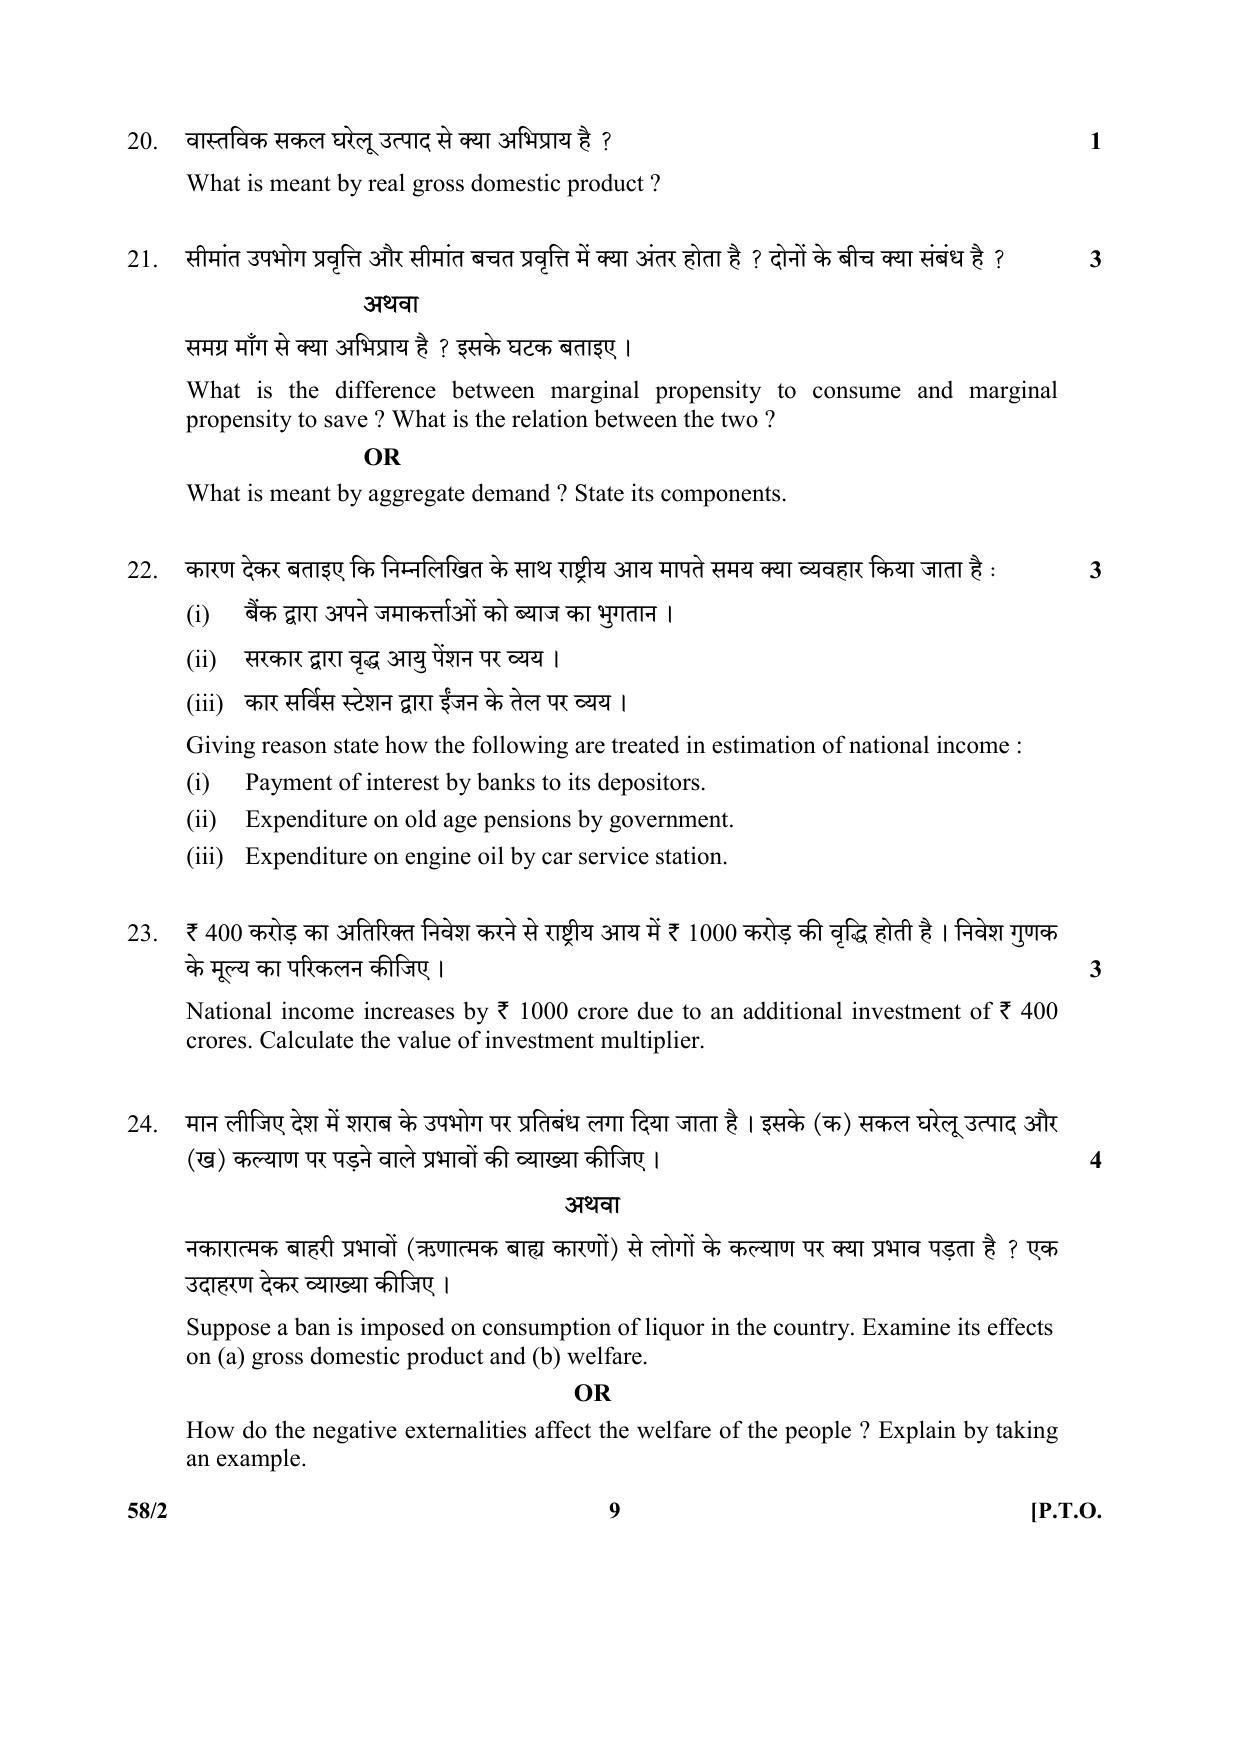 CBSE Class 12 58-2 (Economics) 2017-comptt Question Paper - Page 9